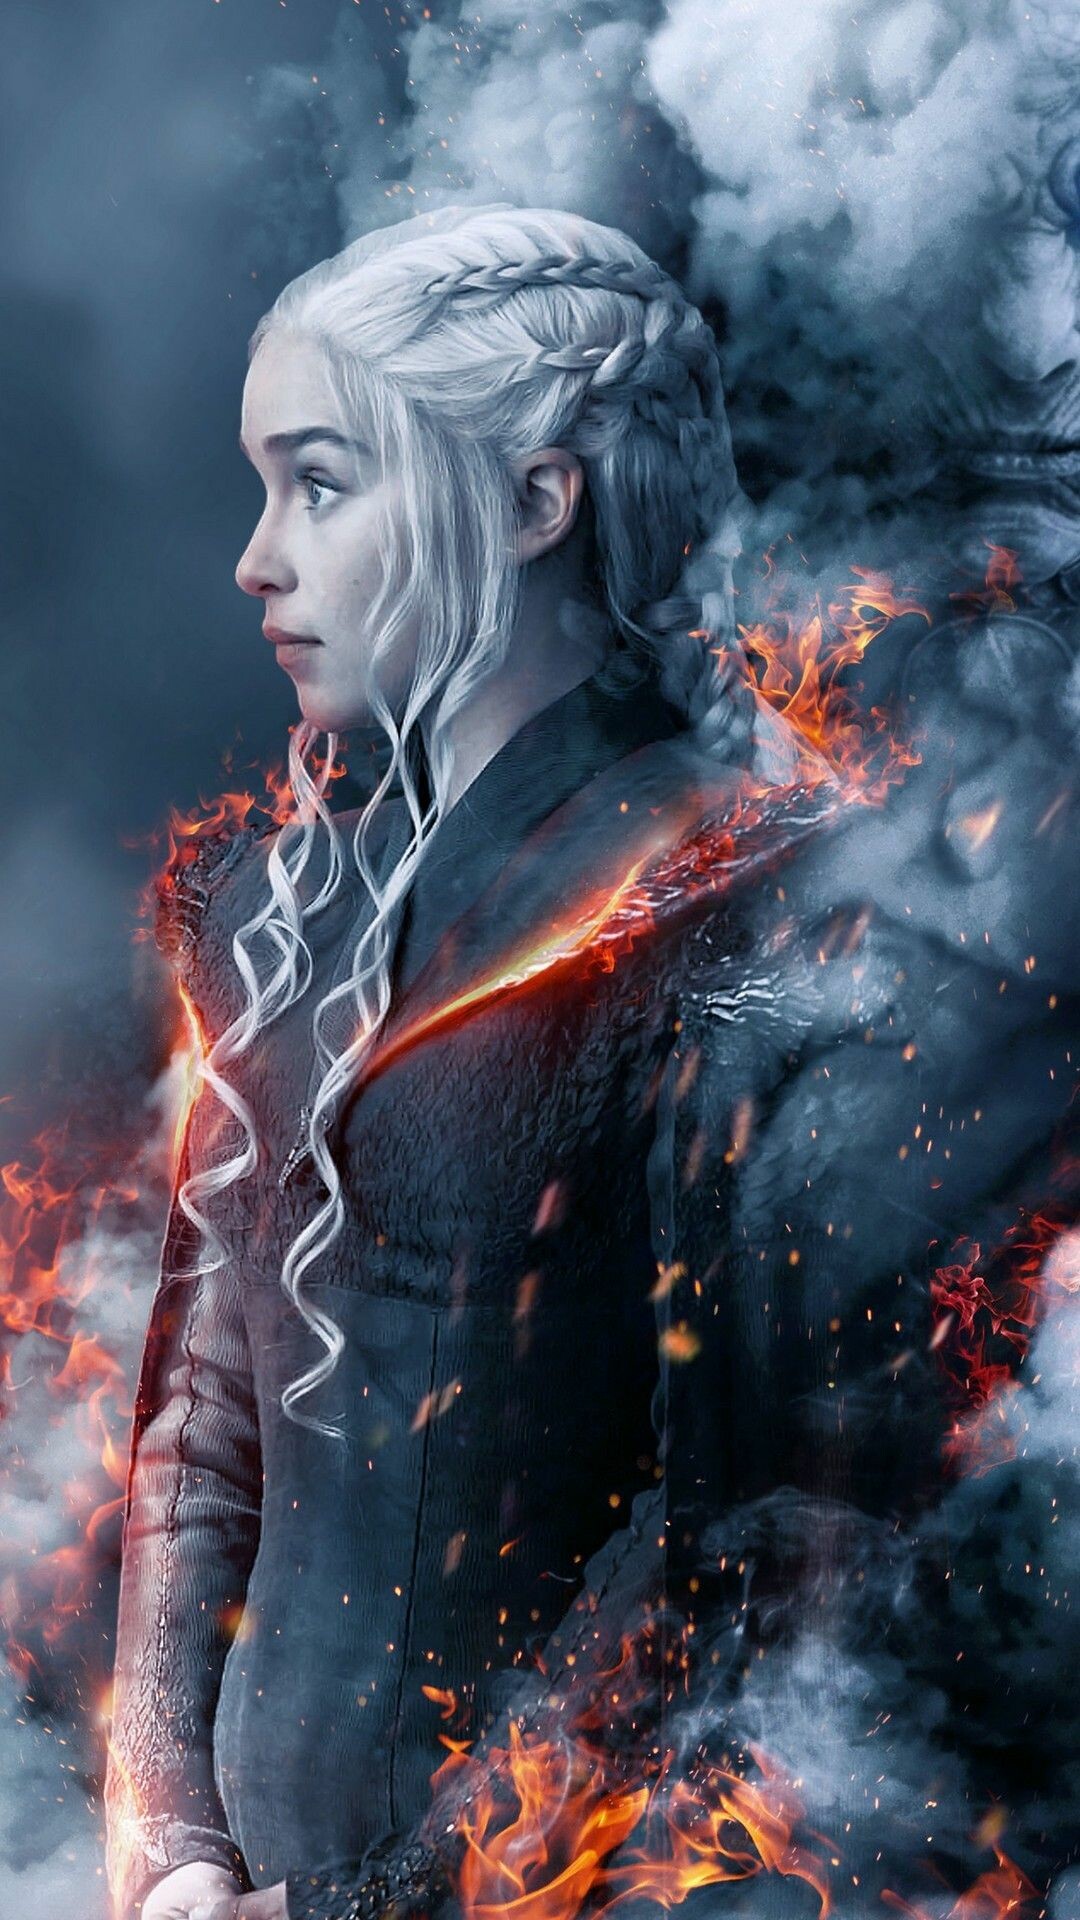 Game of Thrones: Daenerys Targaryen, The Unburnt, Queen of Meereen. 1080x1920 Full HD Wallpaper.